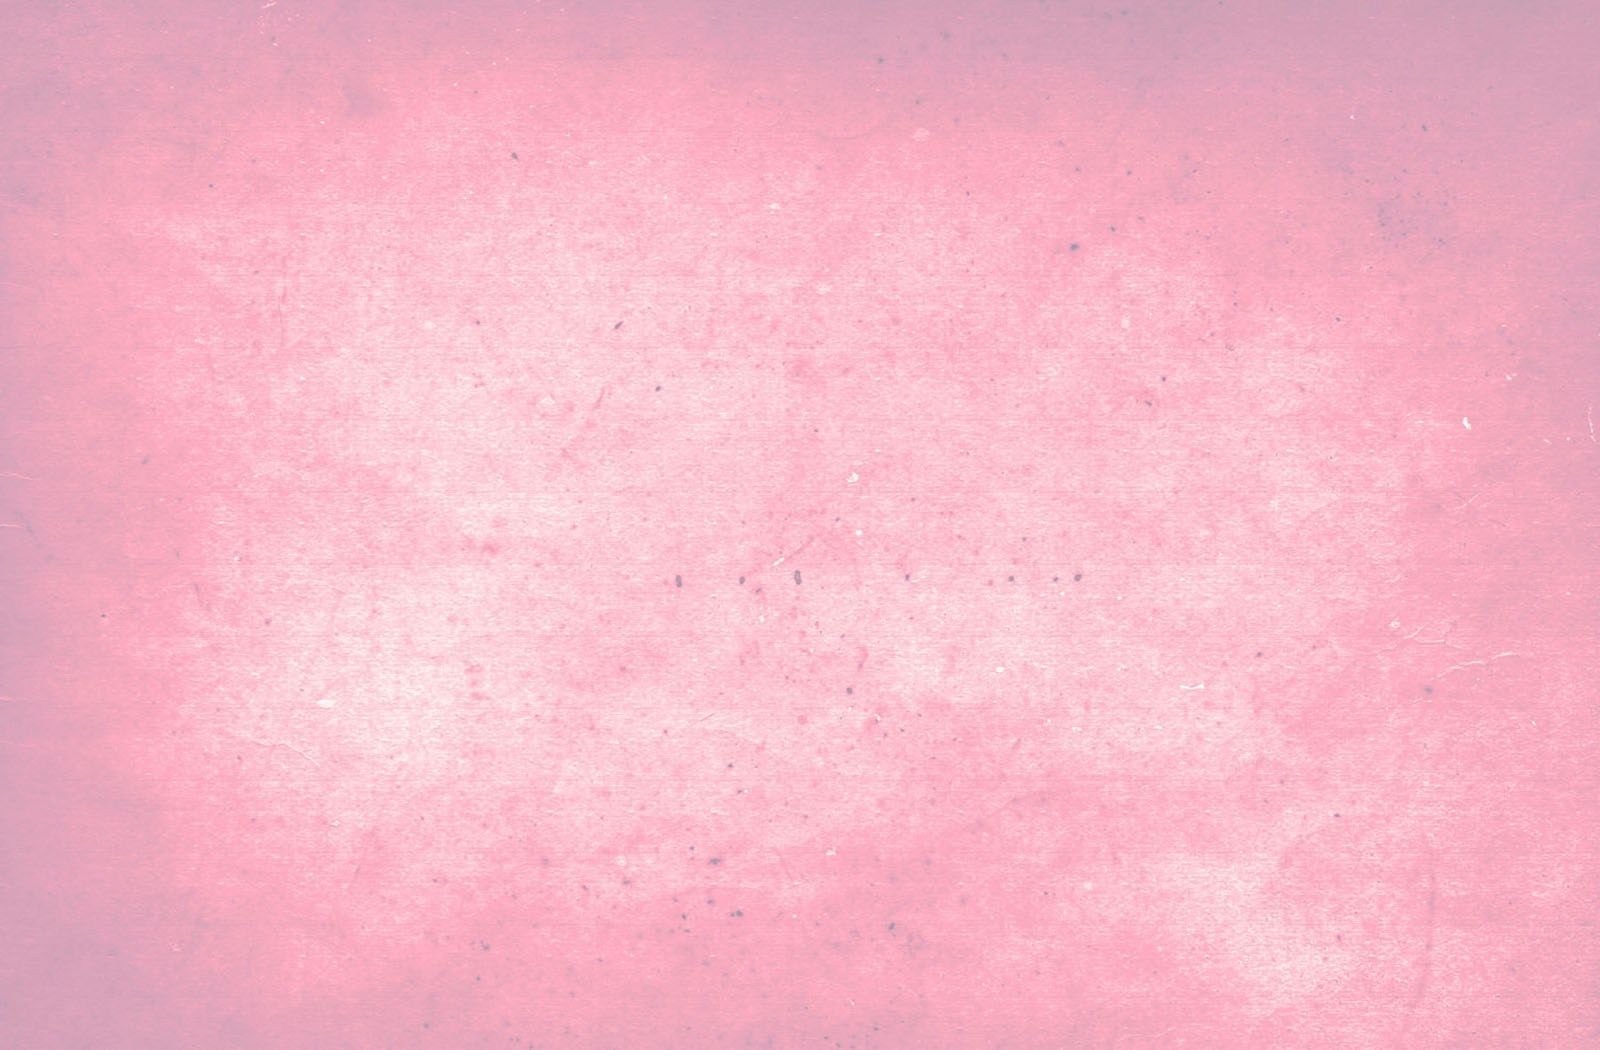 Pink Aesthetic Tumblr Laptop Wallpaper Free Pink Aesthetic